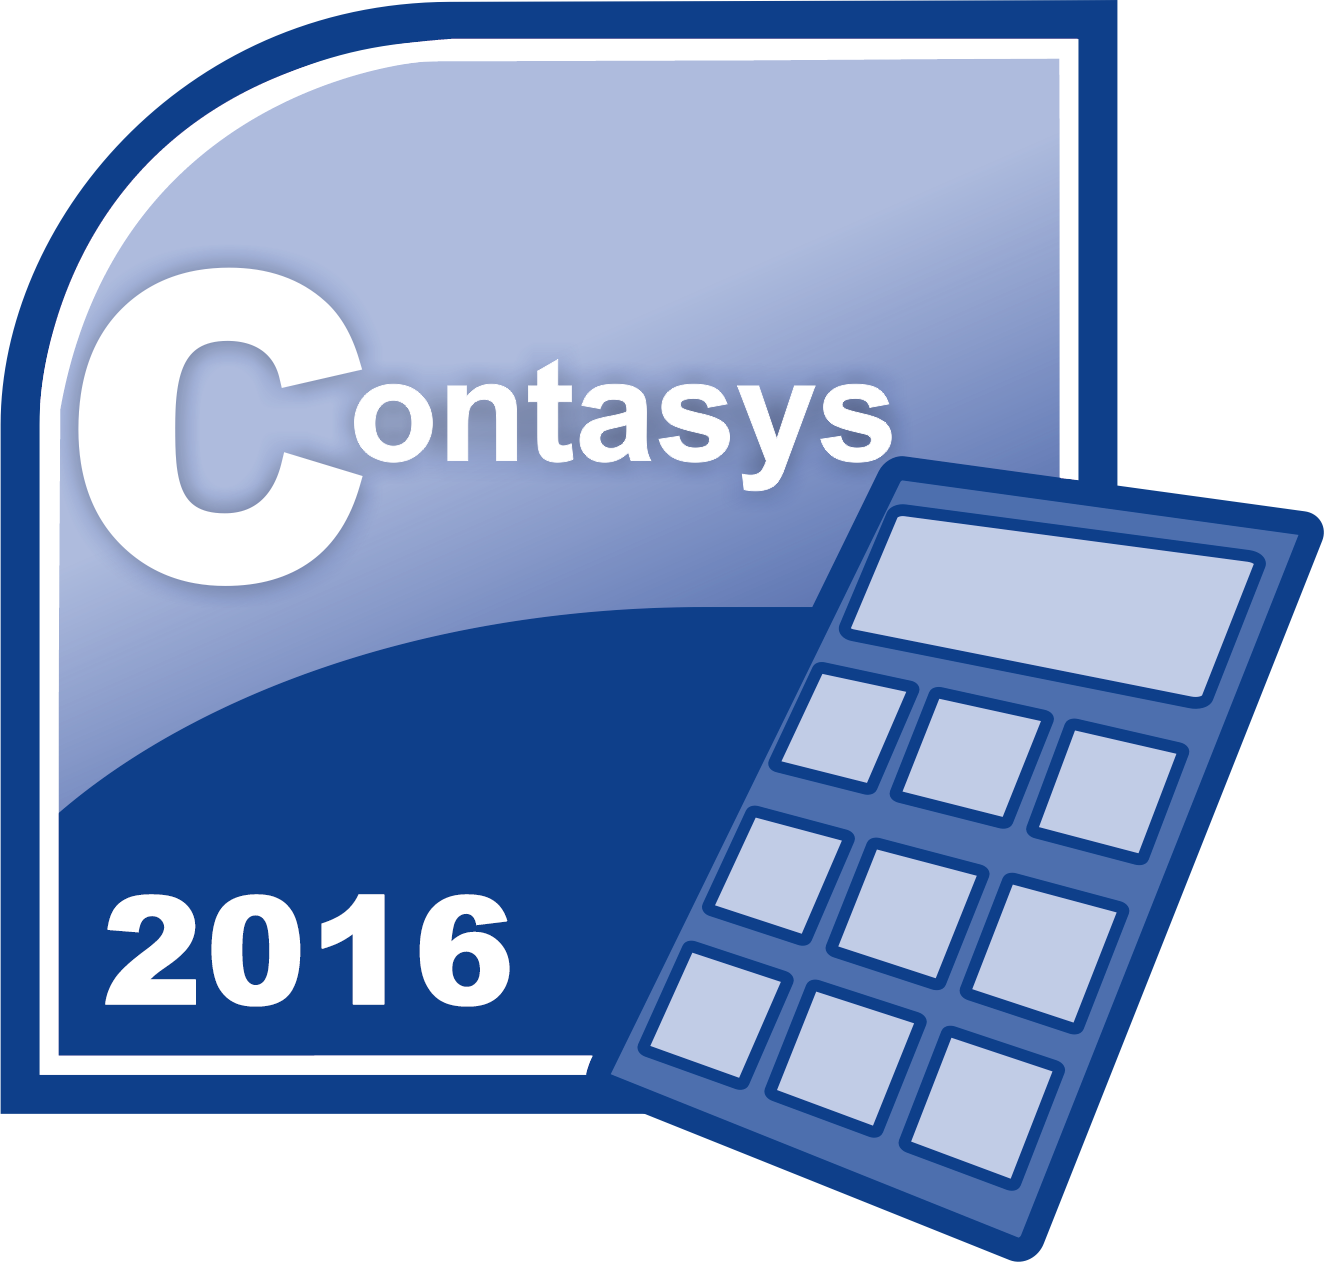 Contasys_2016.png - 230.32 kB